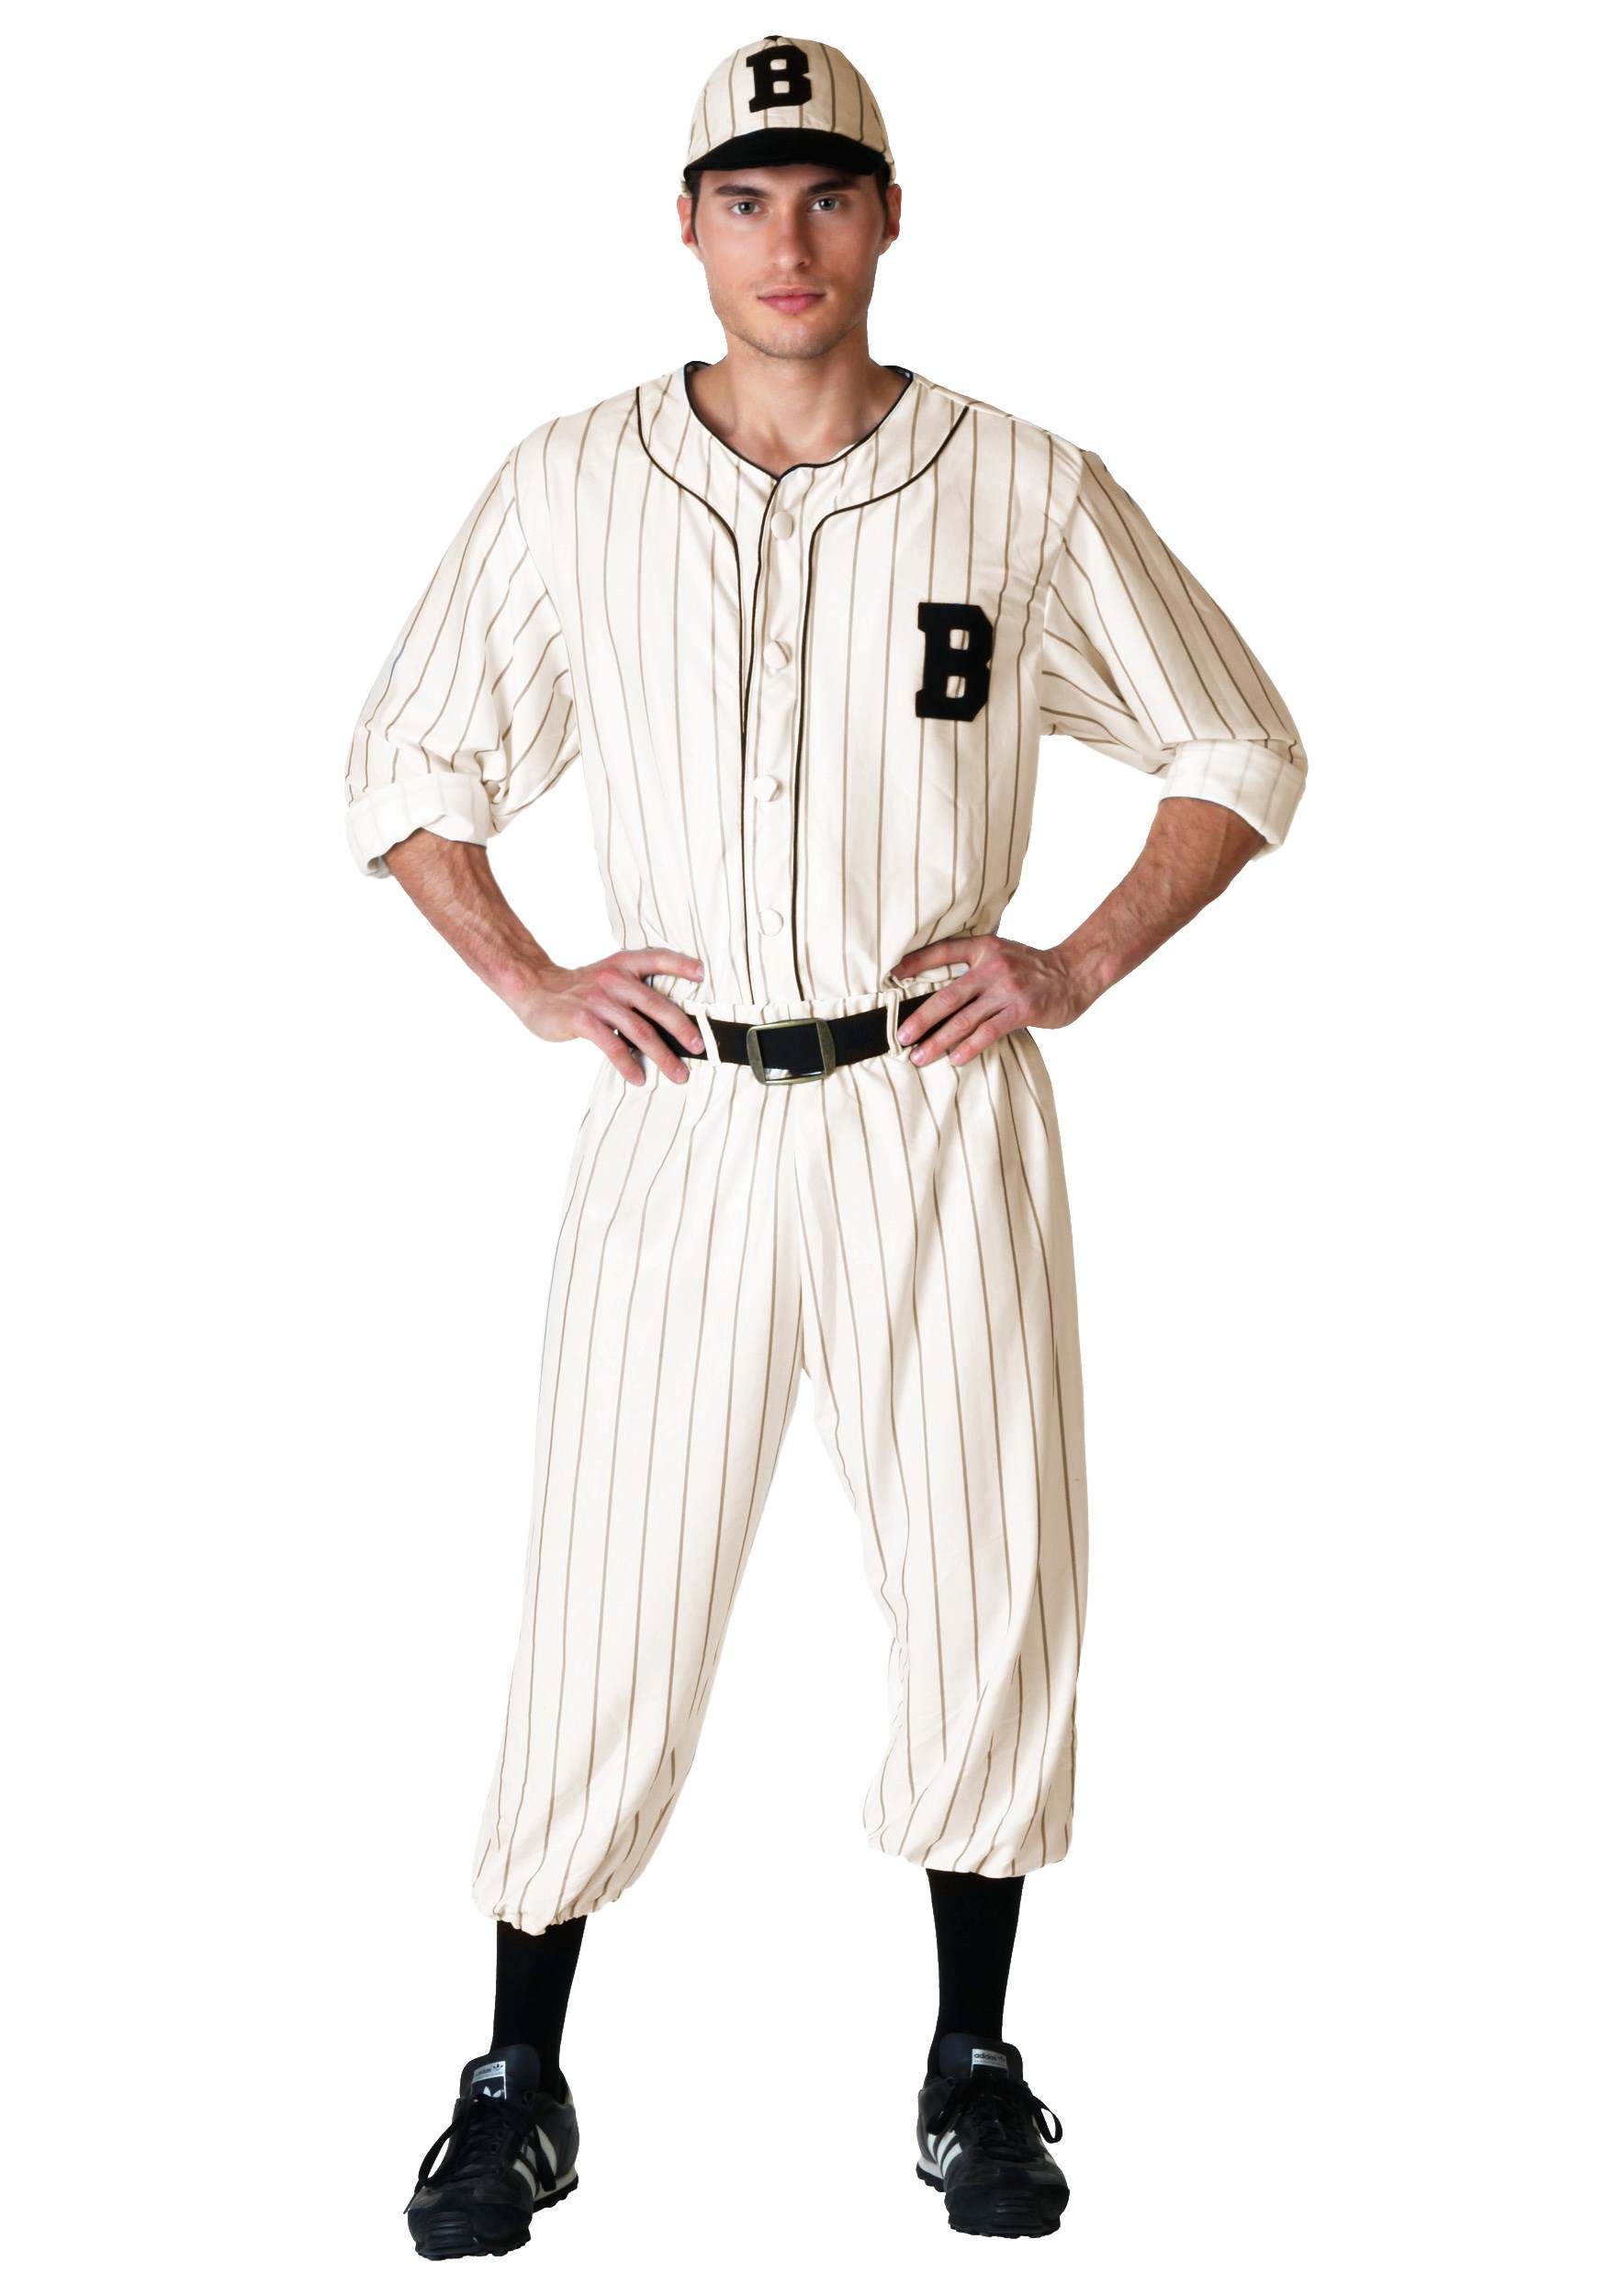 Disfraz de béisbol vintage para adulto